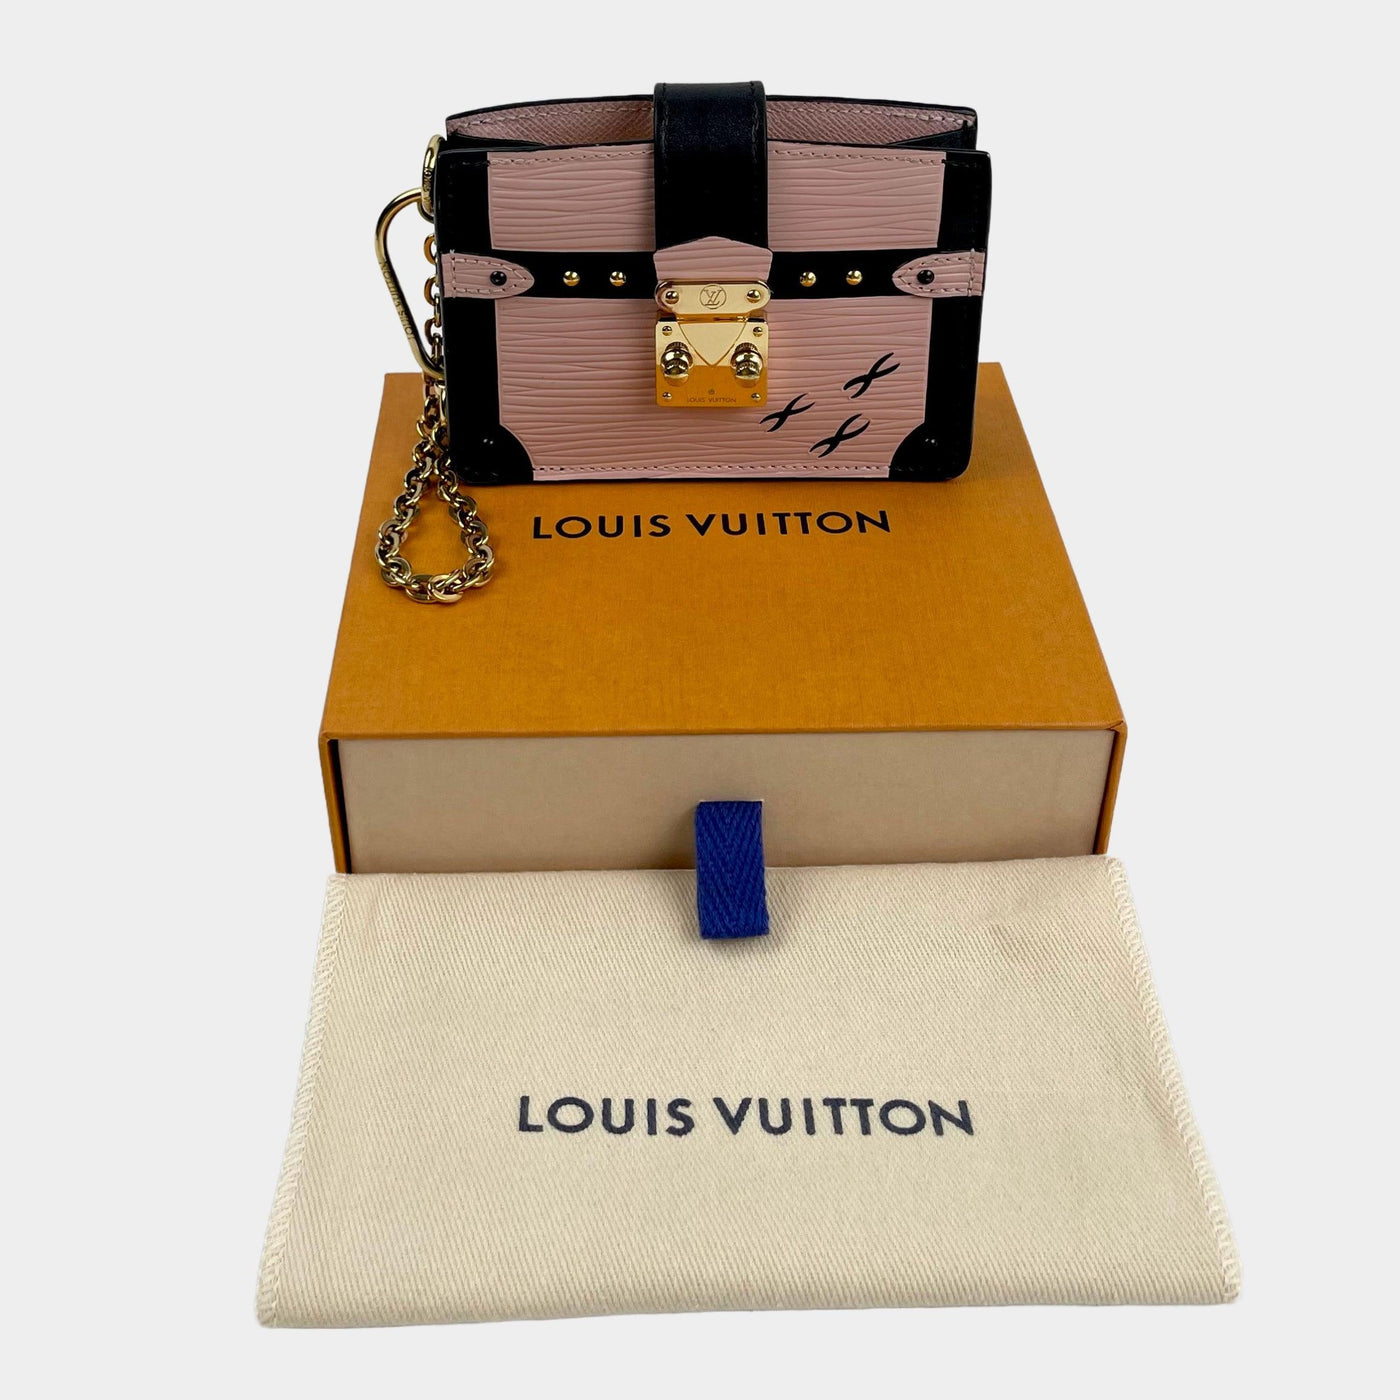 LOUIS VUITTON Trunk Multicartes Epi Leather Wallet